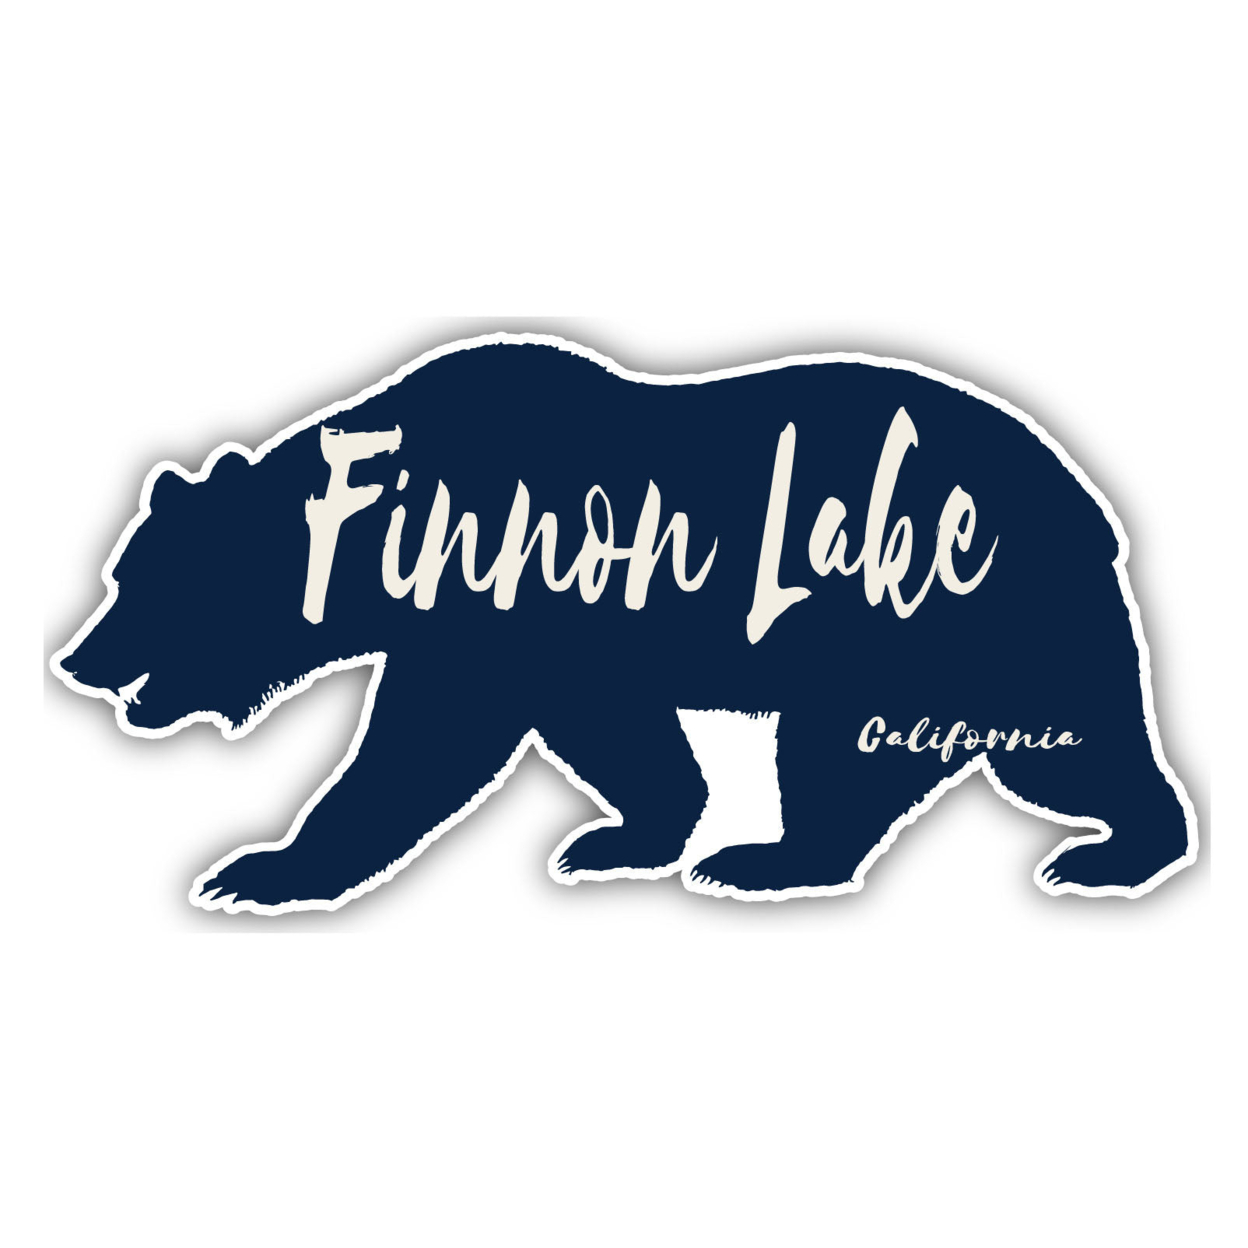 Finnon Lake California Souvenir Decorative Stickers (Choose Theme And Size) - Single Unit, 2-Inch, Tent